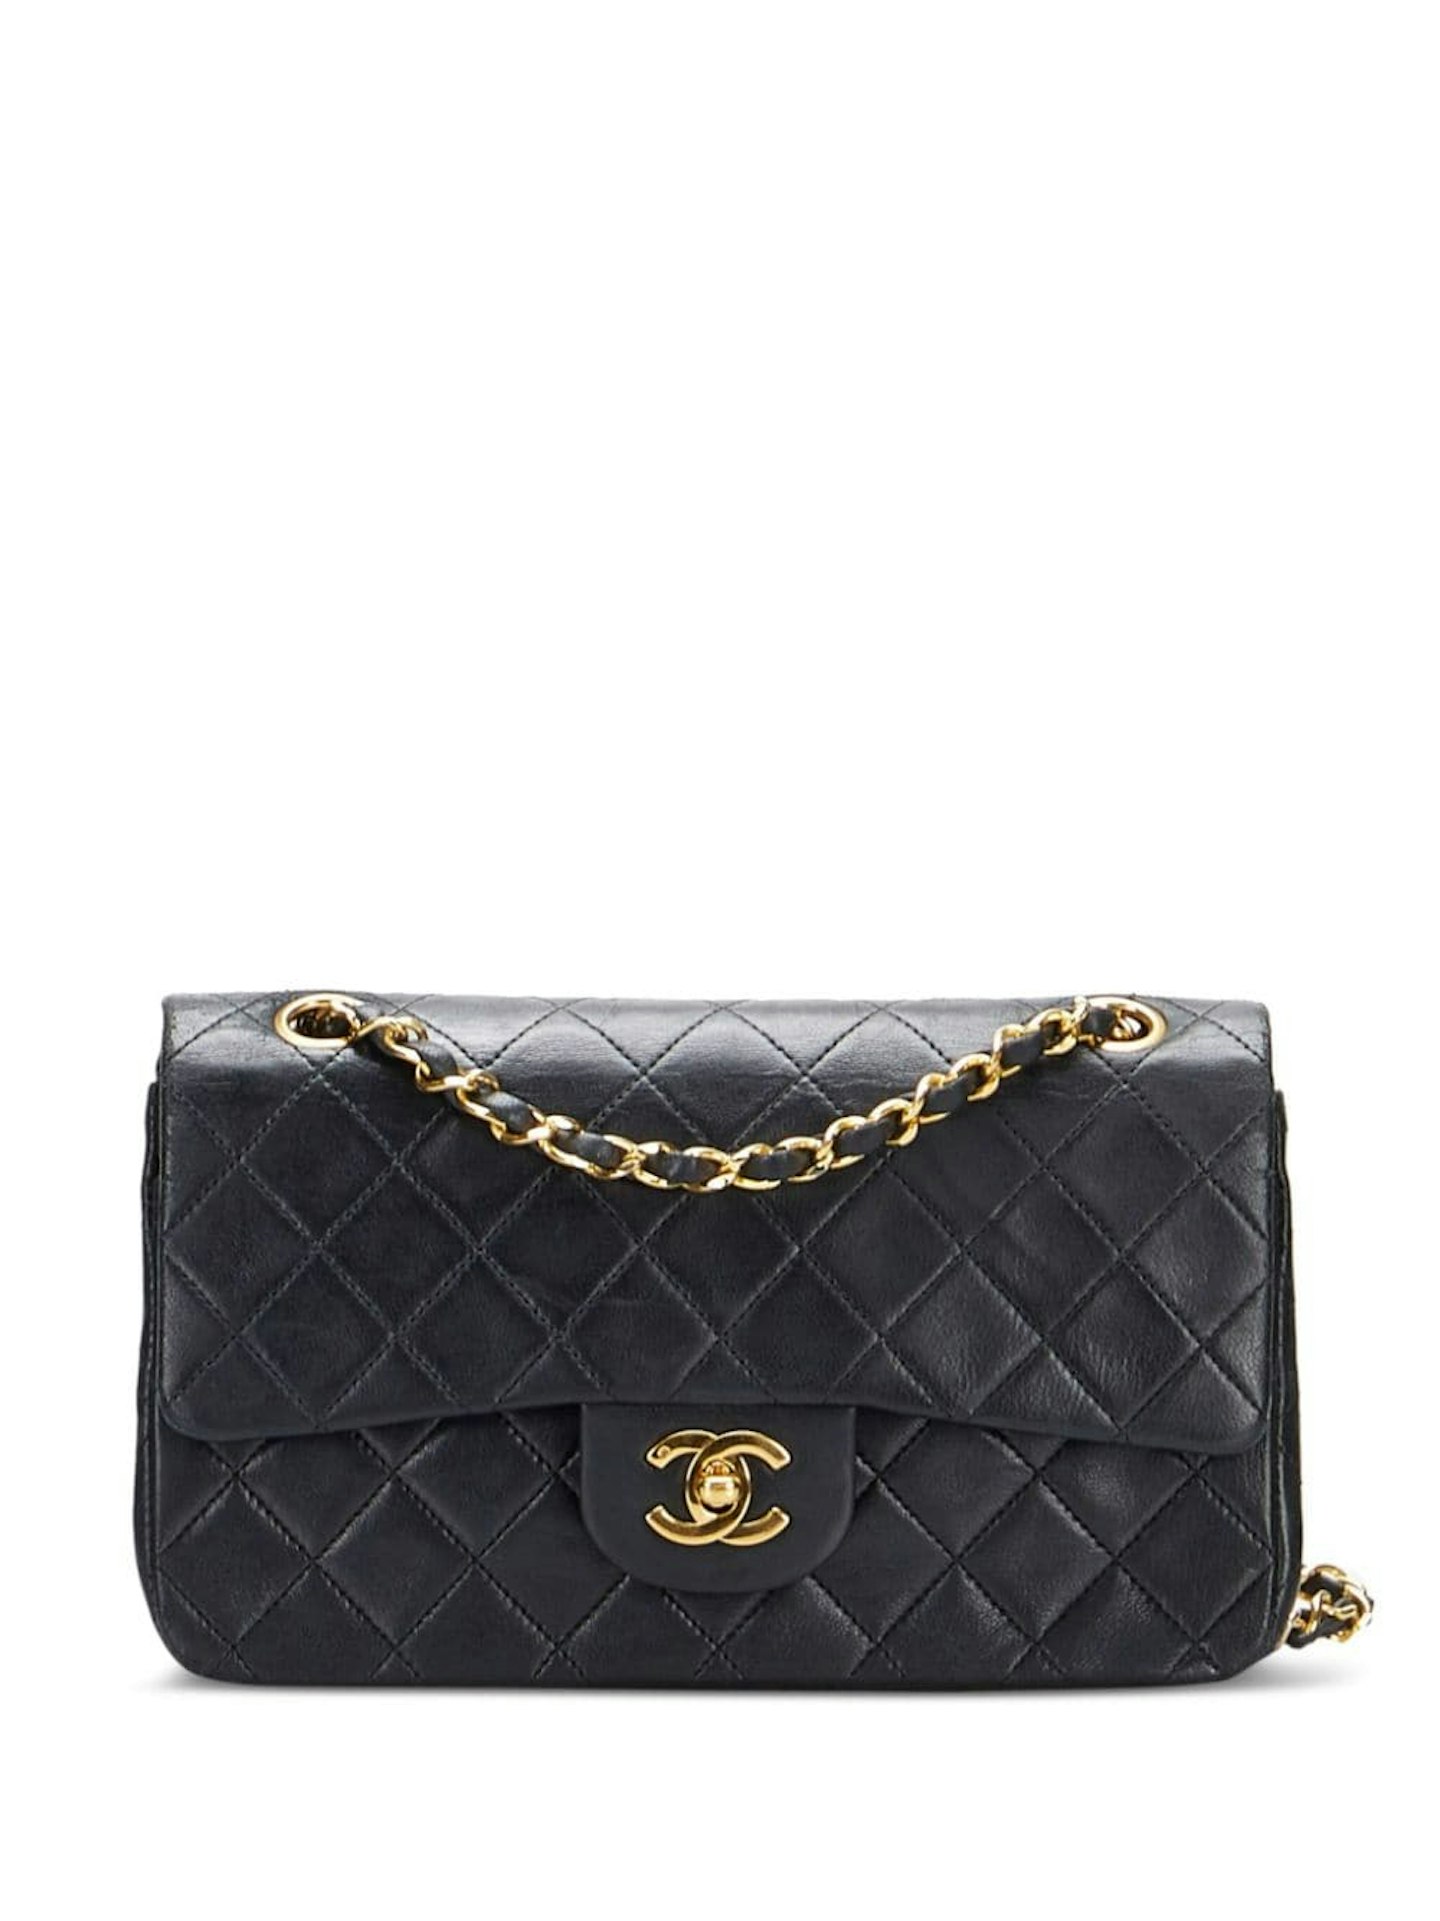 Chanel Double Flap vintage bag